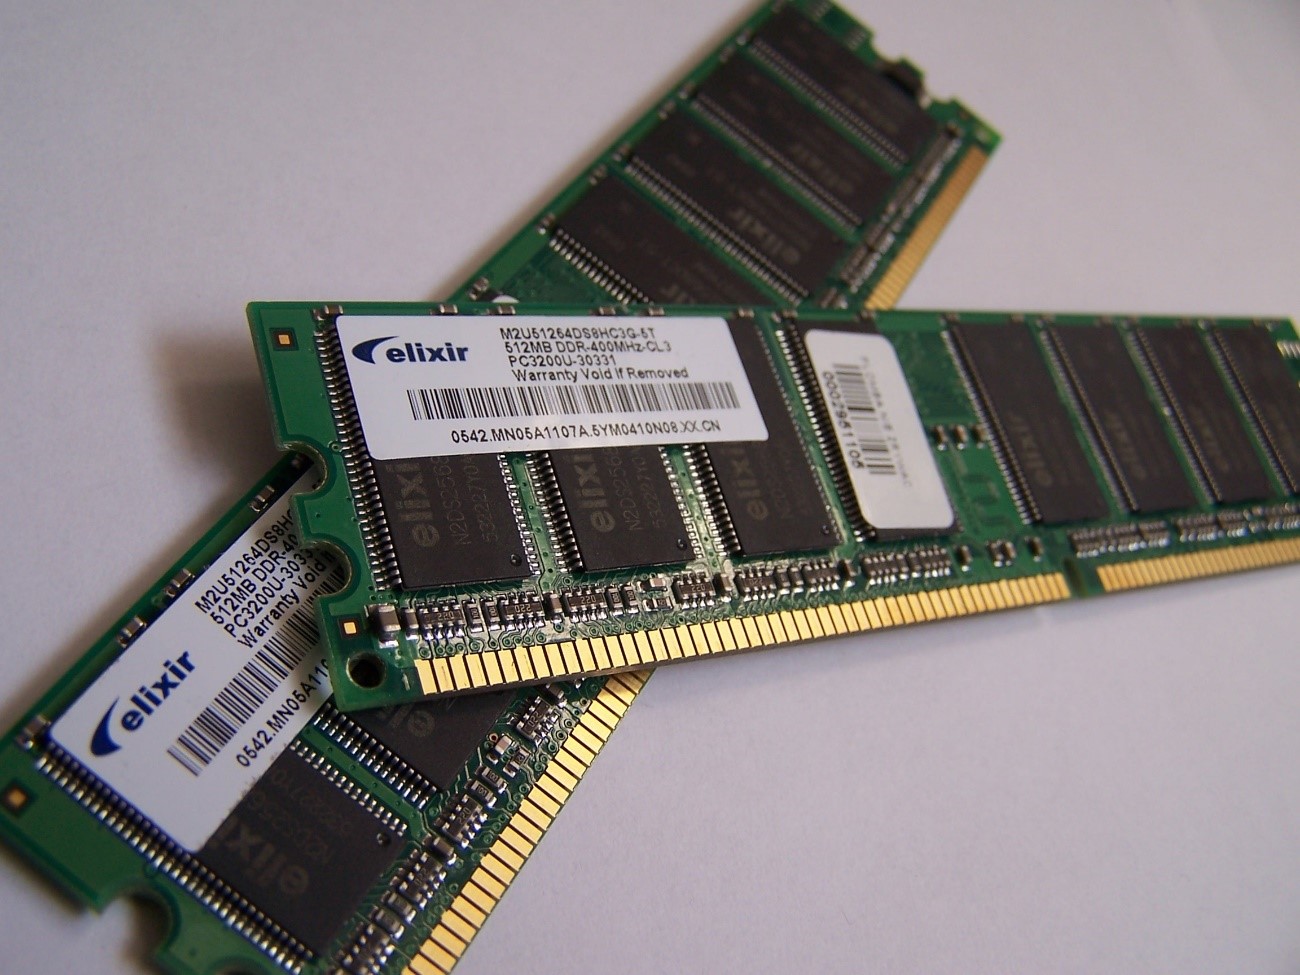 A Memória RAM é a peça-chave que permite o armazenamento temporário dos arquivos que estão sendo executados no momento. Diferente do HD, ao desligar o computador ela não armazena os dados que foram abertos durante o uso, ou seja, podemos entender que ela é um espaço temporário de trabalho. 